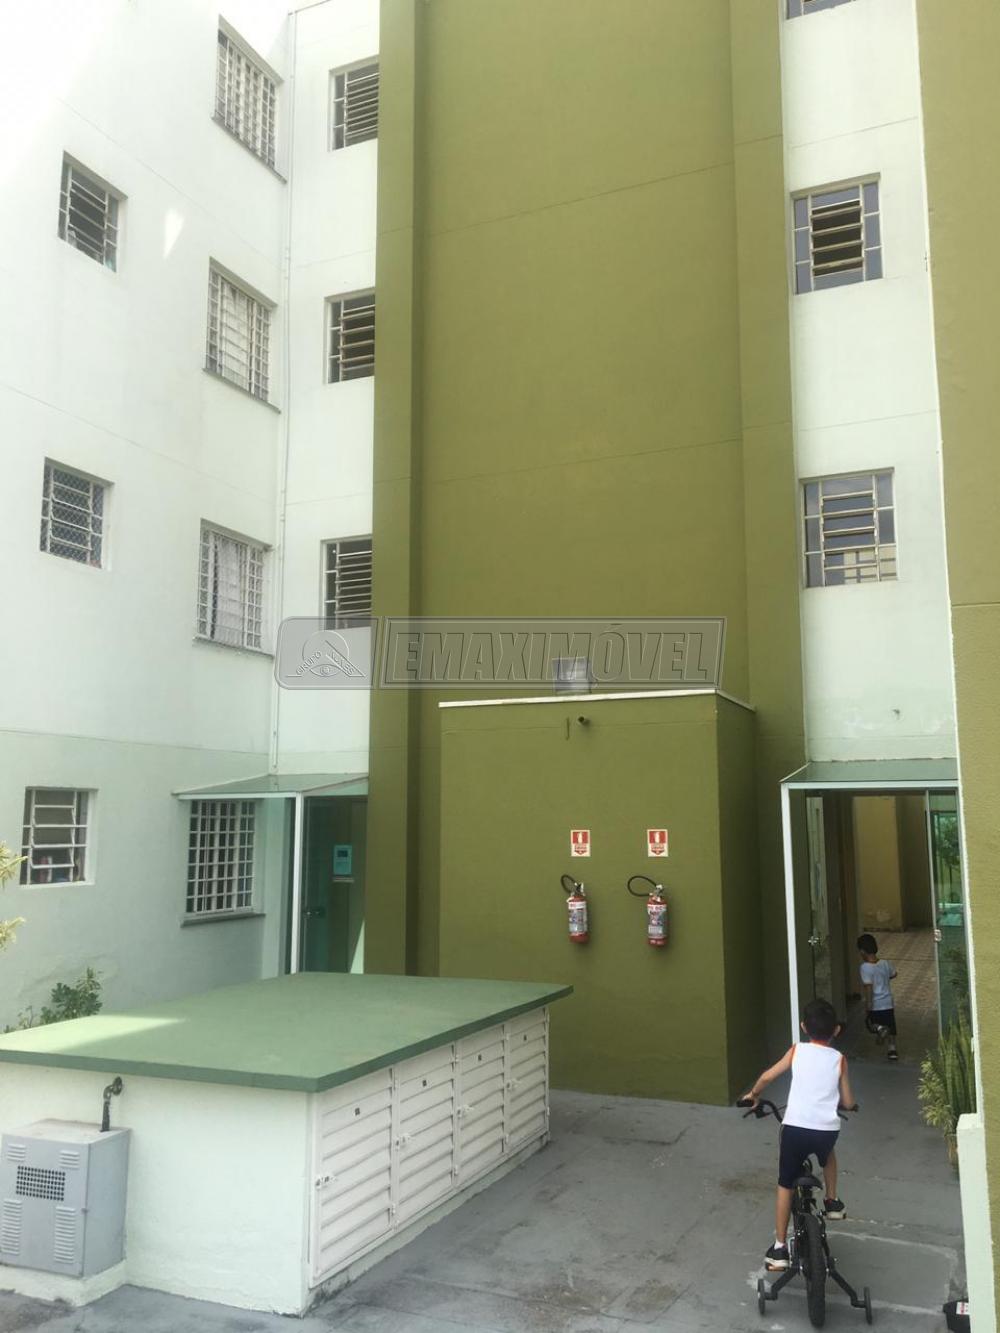 Comprar Apartamento / Padrão em Sorocaba R$ 130.000,00 - Foto 2